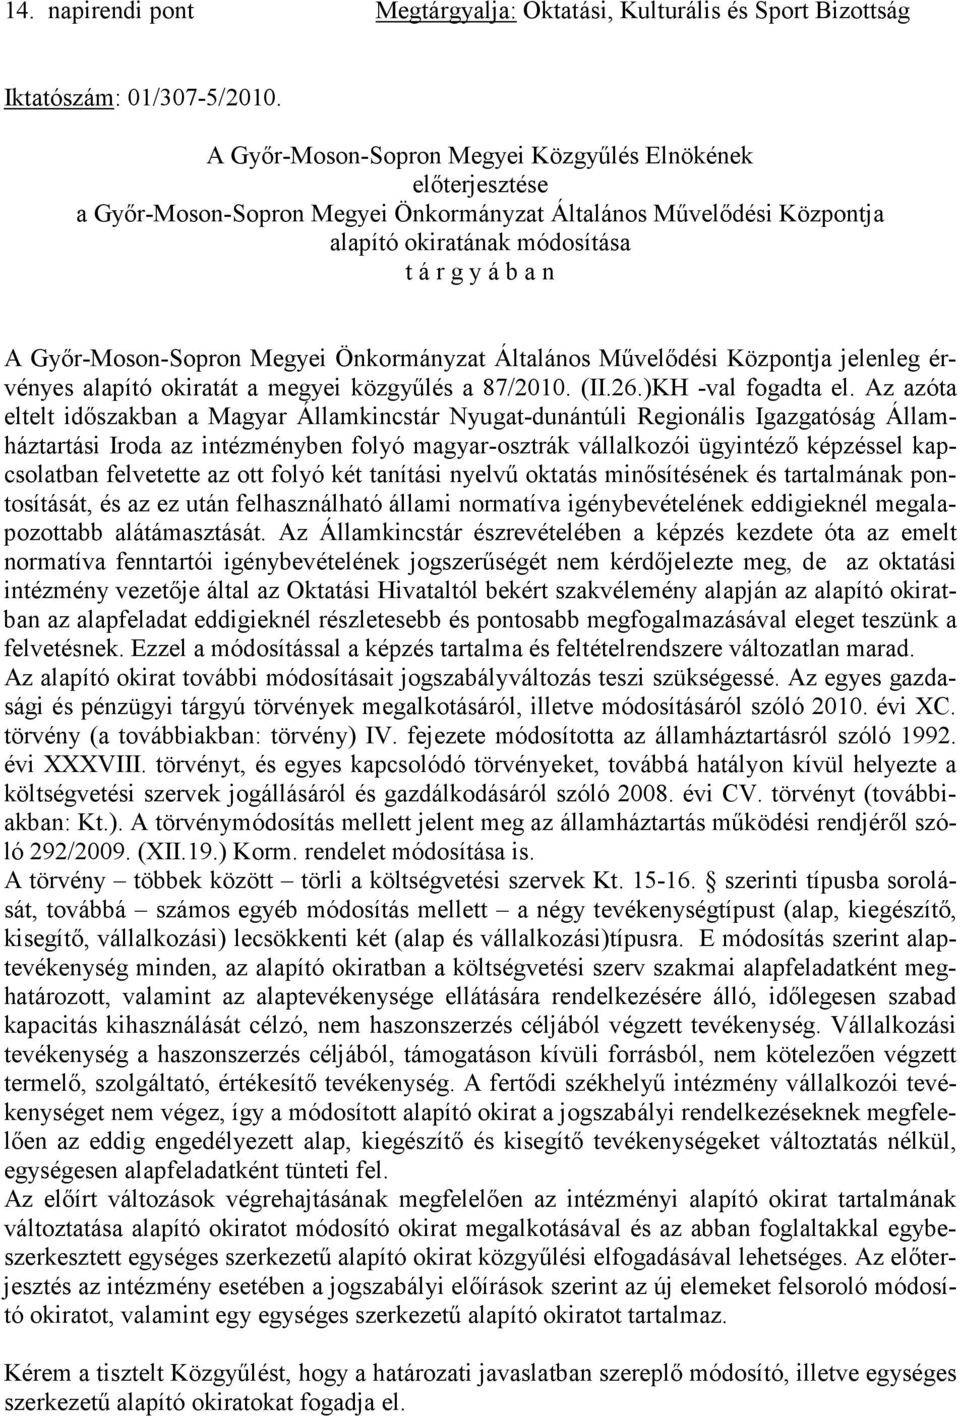 Győr-Moson-Sopron Megyei Önkormányzat Általános Művelődési Központja jelenleg érvényes alapító okiratát a megyei közgyűlés a 87/2010. (II.26.)KH -val fogadta el.